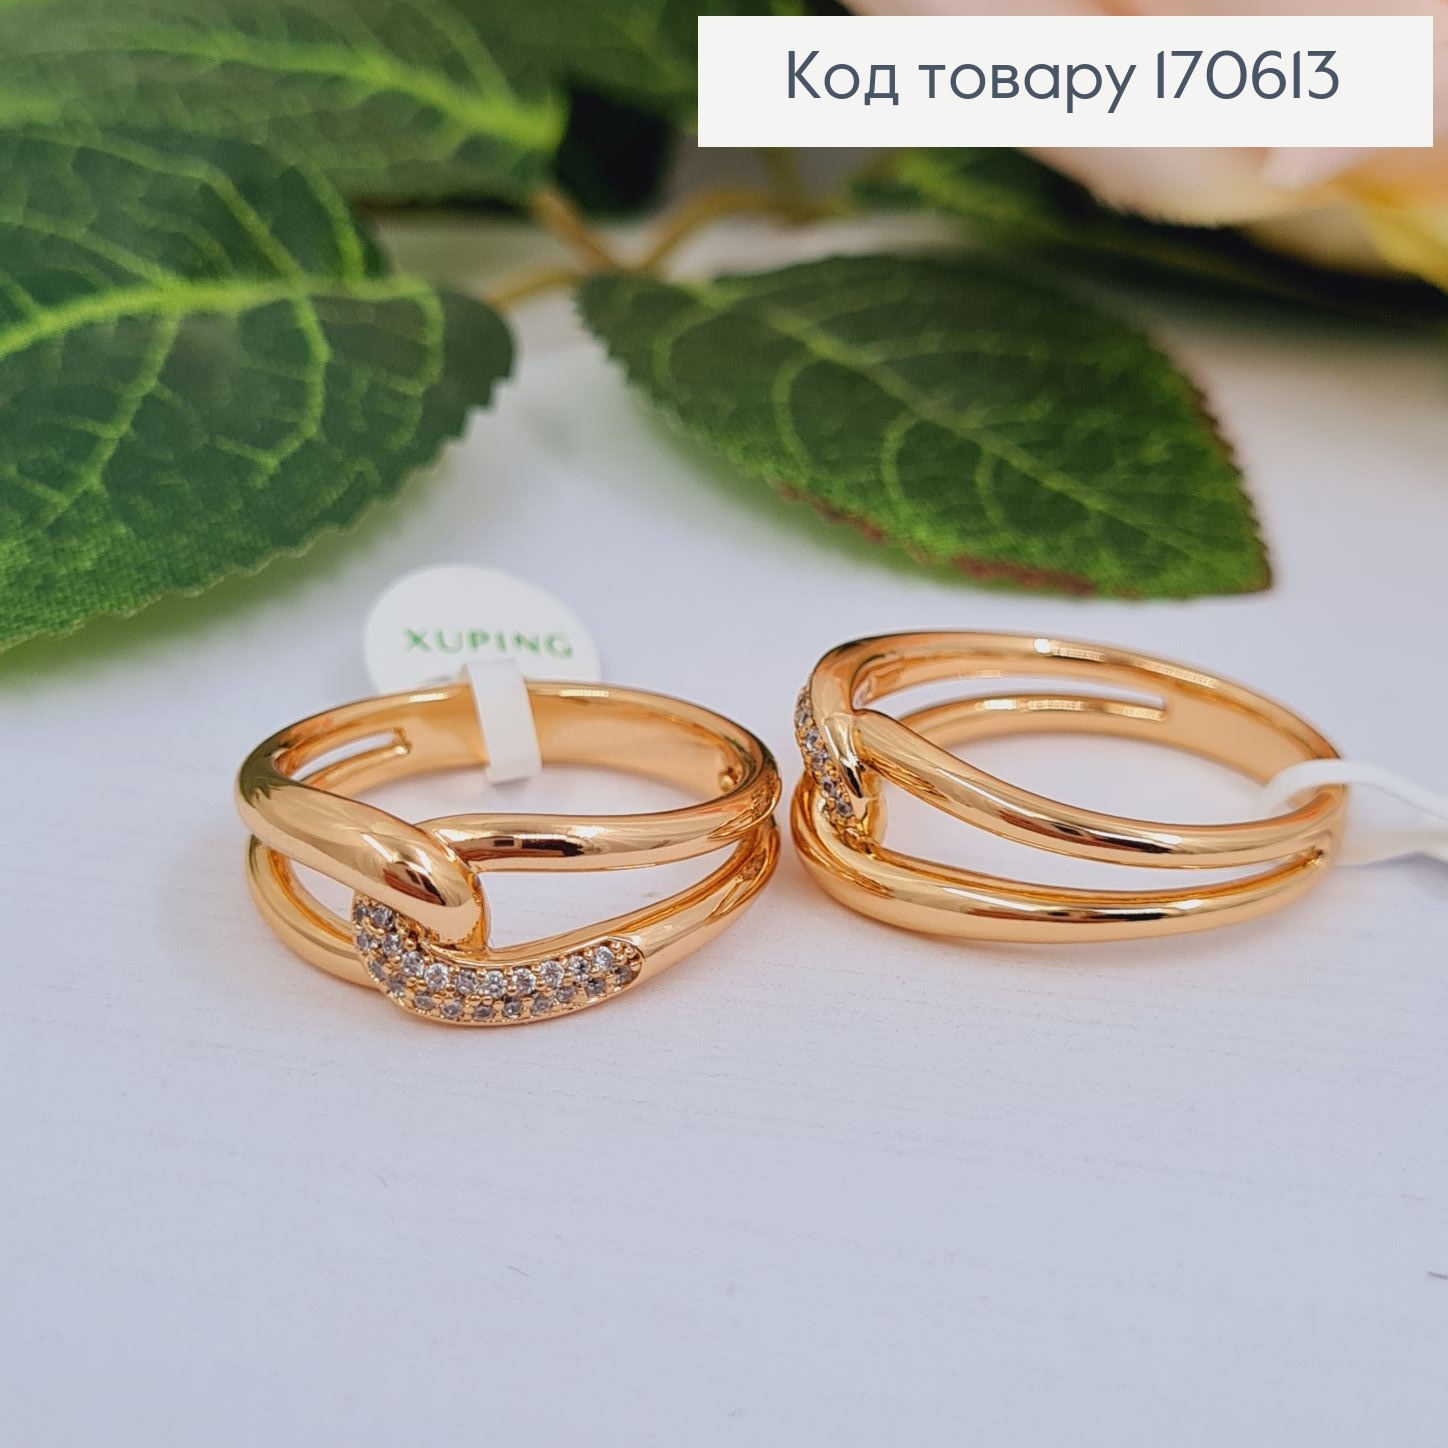 Перстень Вузлик з камінцями, Xuping 18K 170613 фото 2